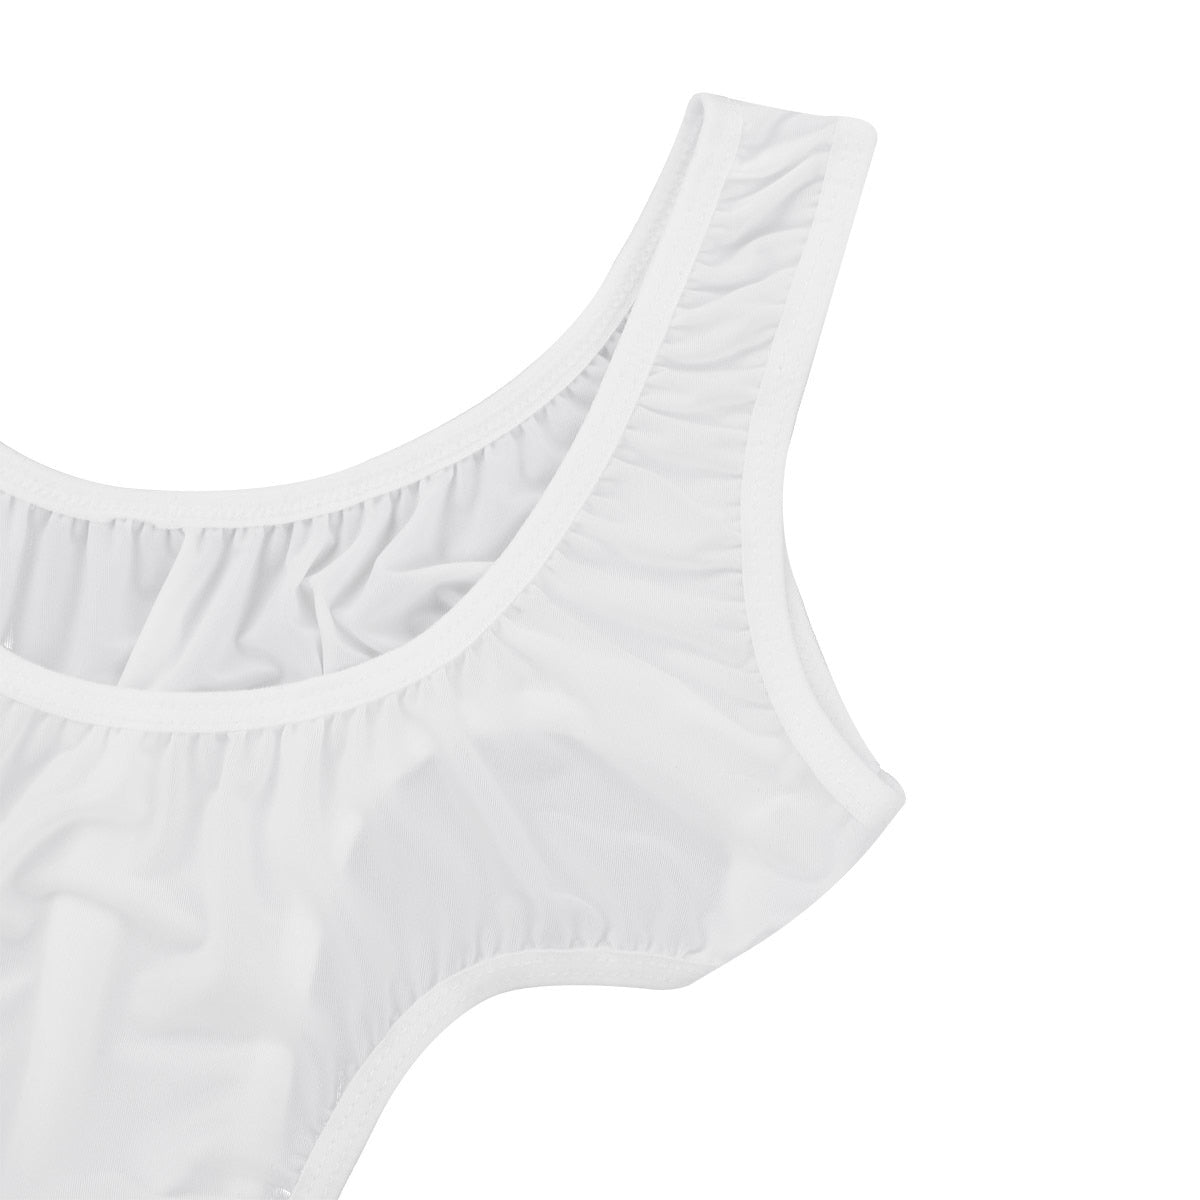 Cheap Women's Lingerie Sleeveless High Cut Thong Leotard Underwear